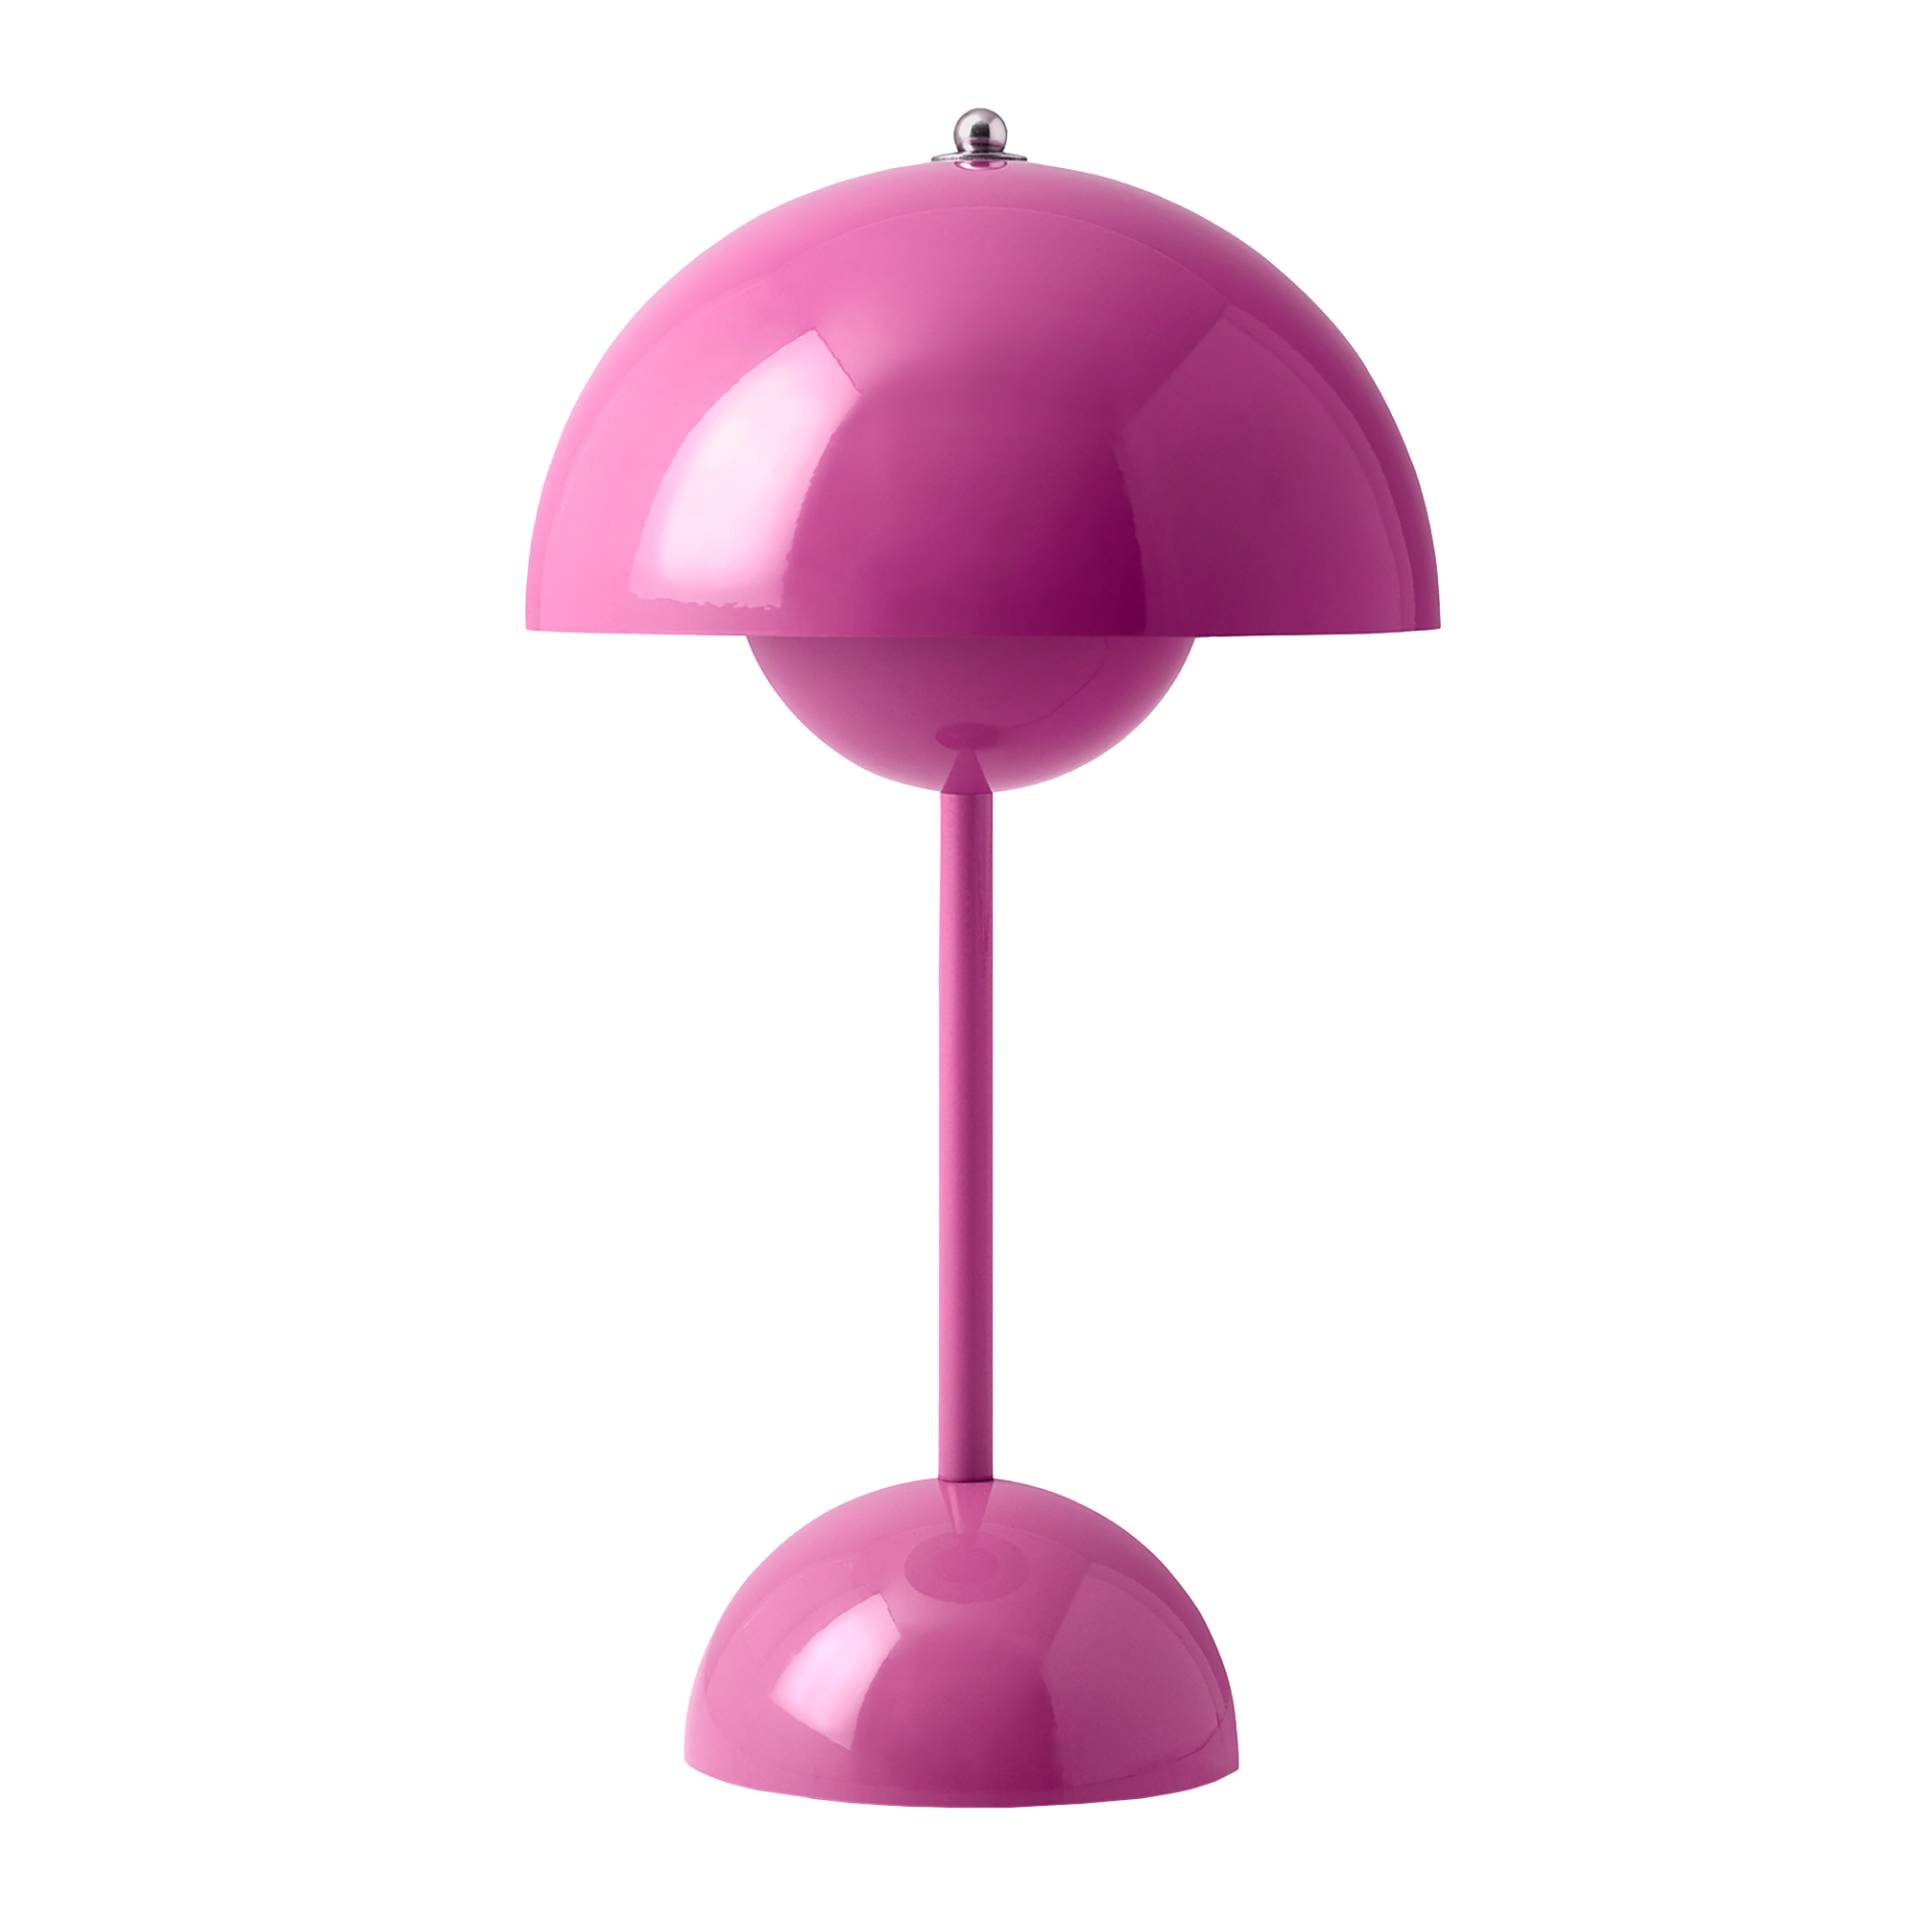 &Tradition - Flowerpot VP9 LED Akku Tischleuchte - tangy pink/glänzend/H x Ø 29,5x16cm/3W/2700K/104lm/CRI>90/Touch-Dimmer/mit magnetischem Ladekabel von &Tradition